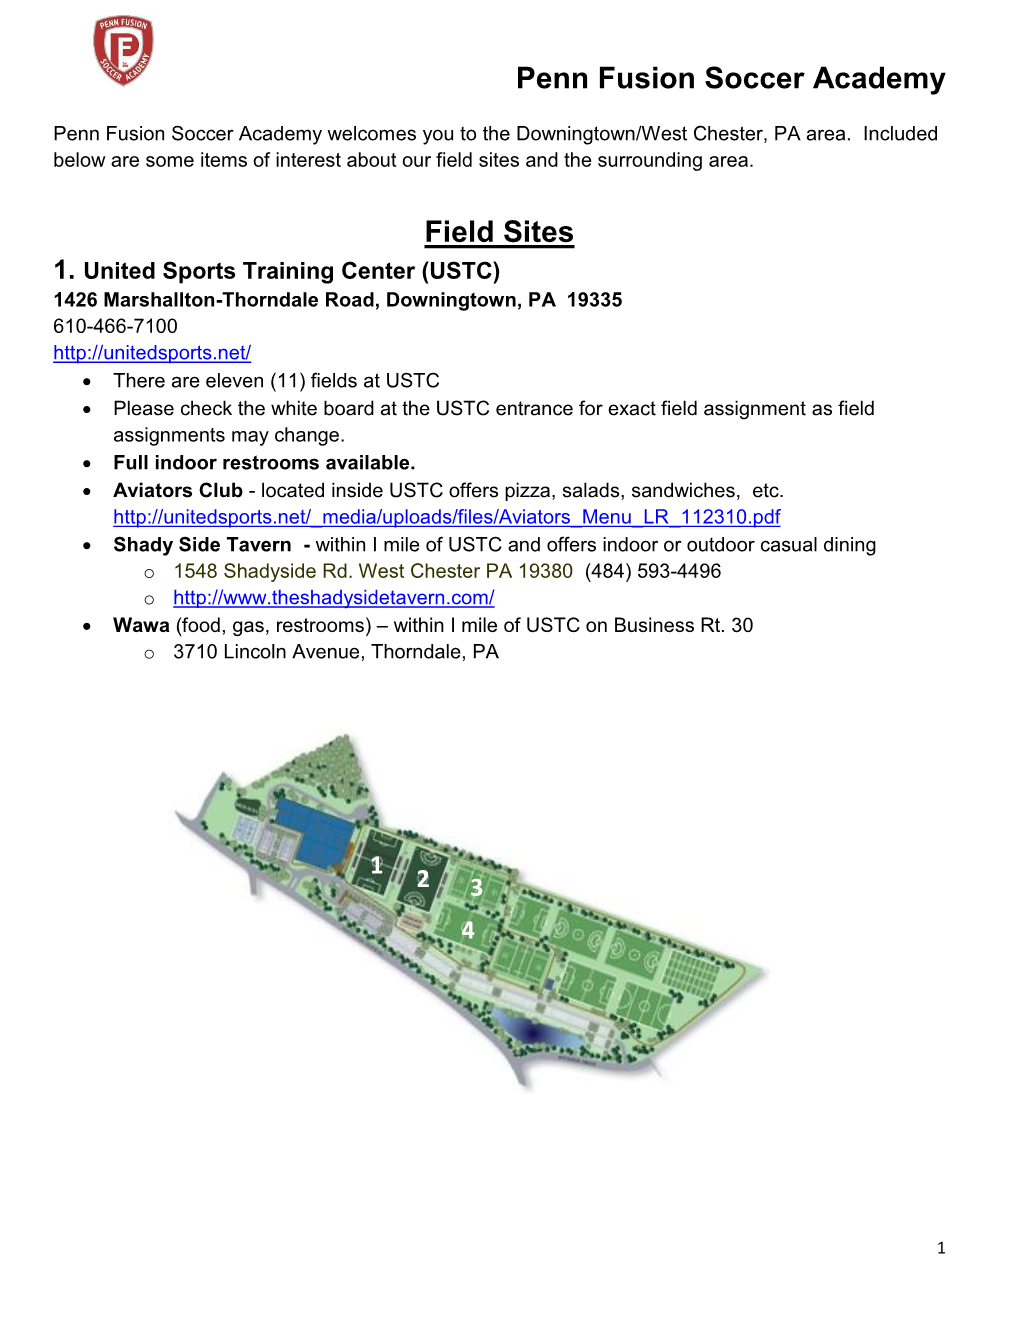 Penn Fusion Soccer Academy Field Sites